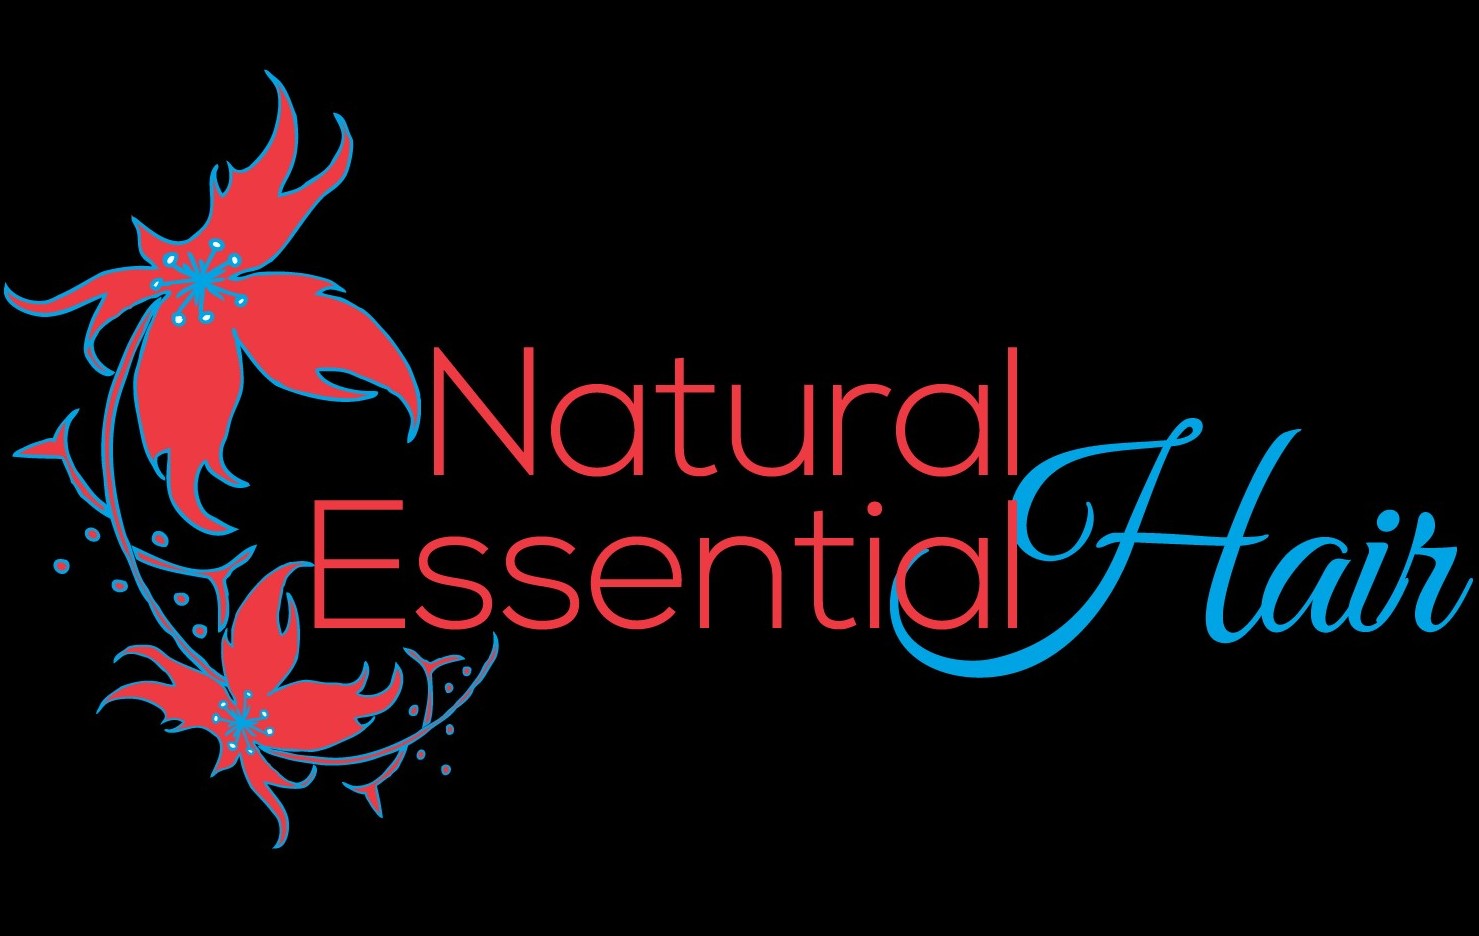 Natural Essential Hair